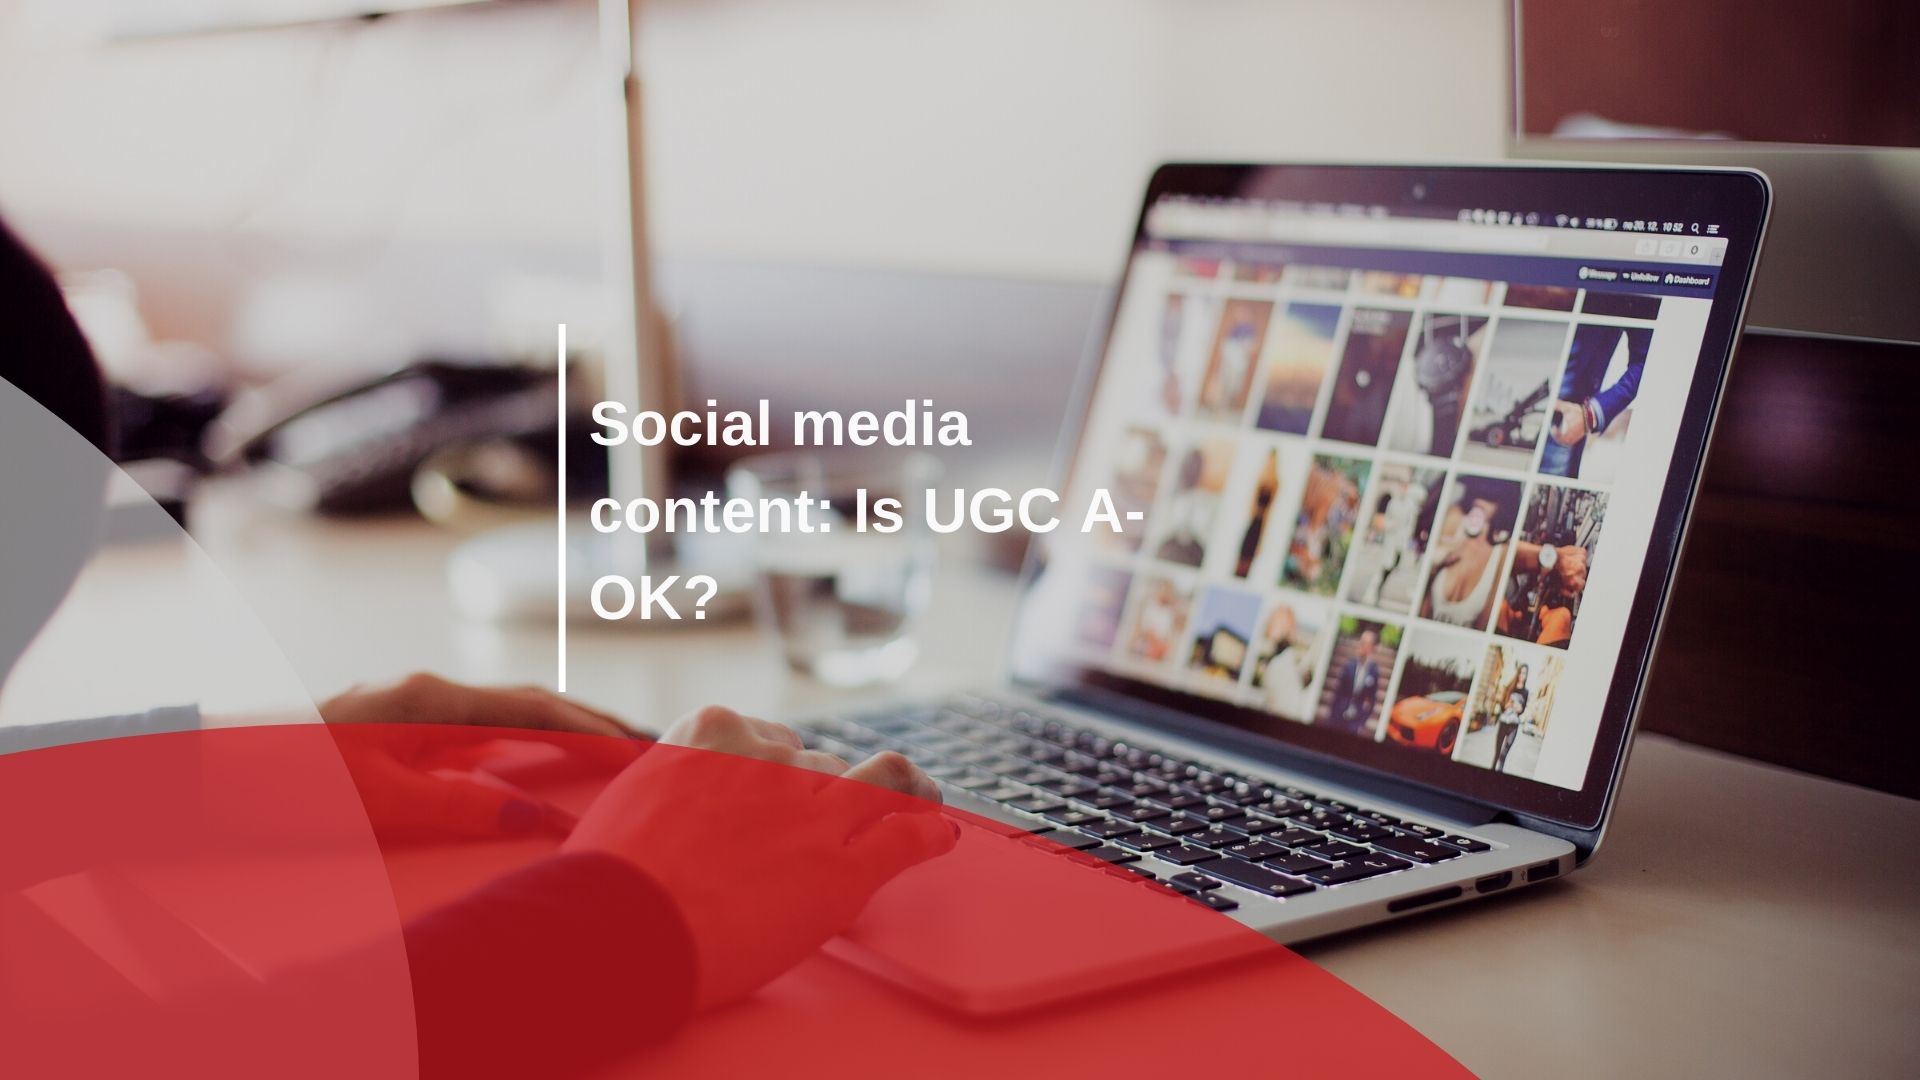 Social media content: Is UGC A-OK?